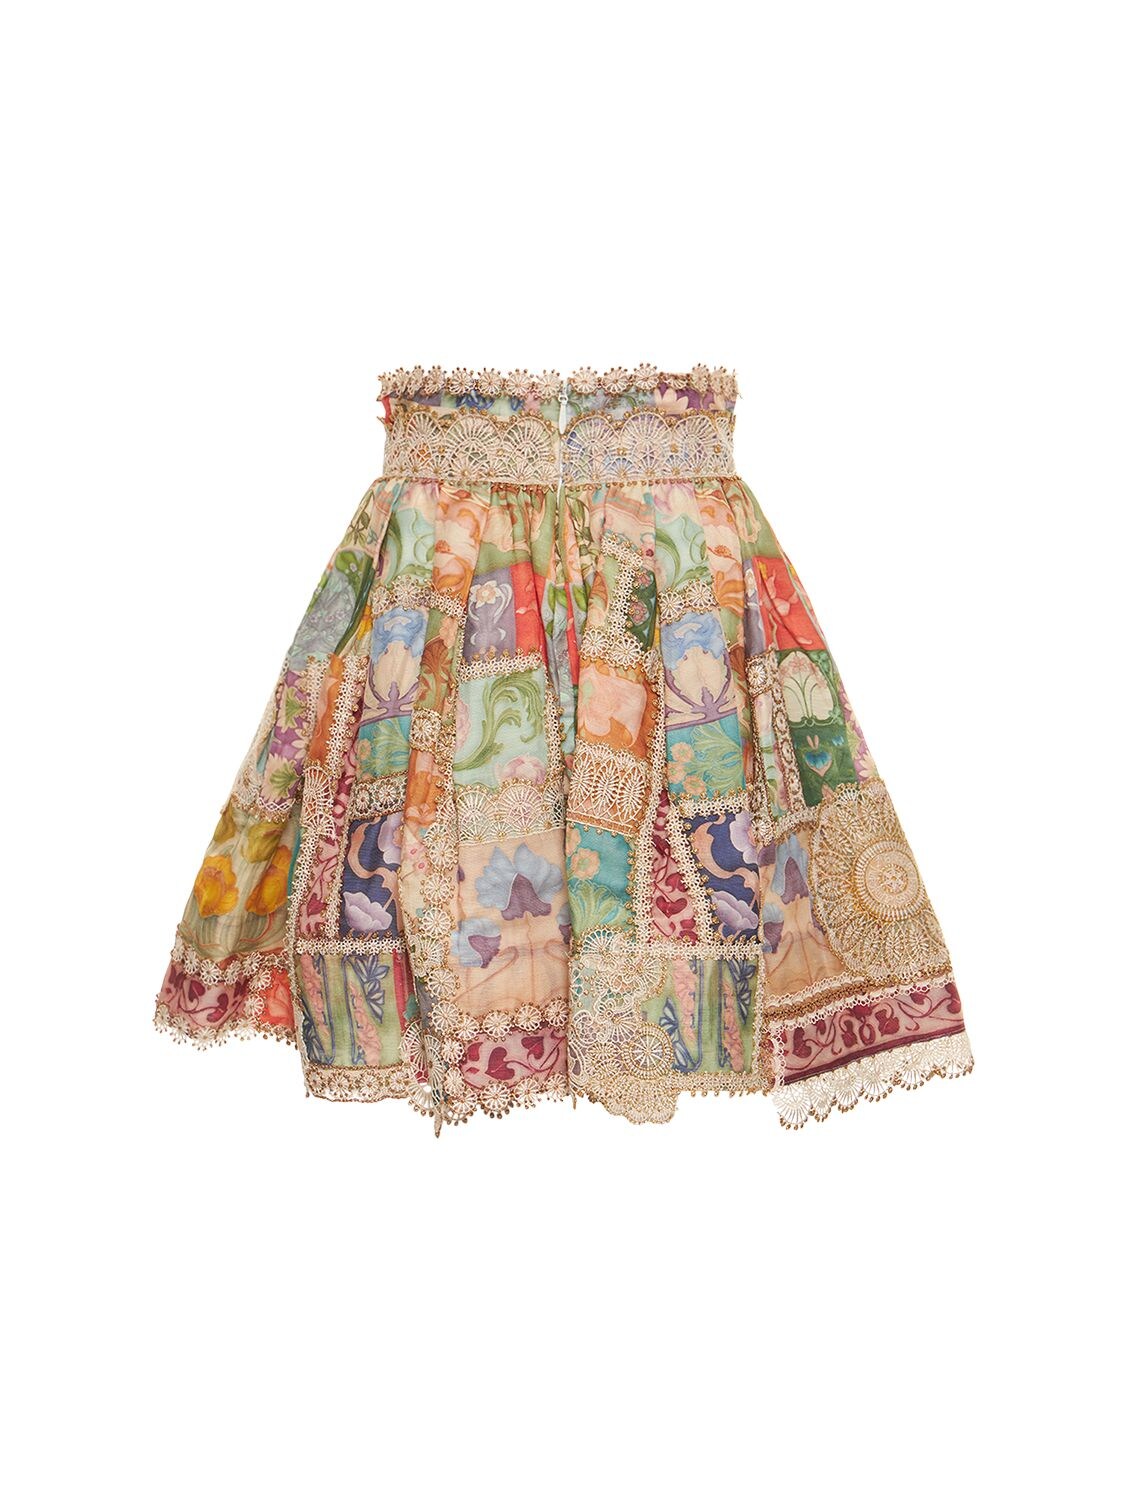 Zimmermann Cosmic Zodiac Doily Mini Skirt In Multicolor | ModeSens